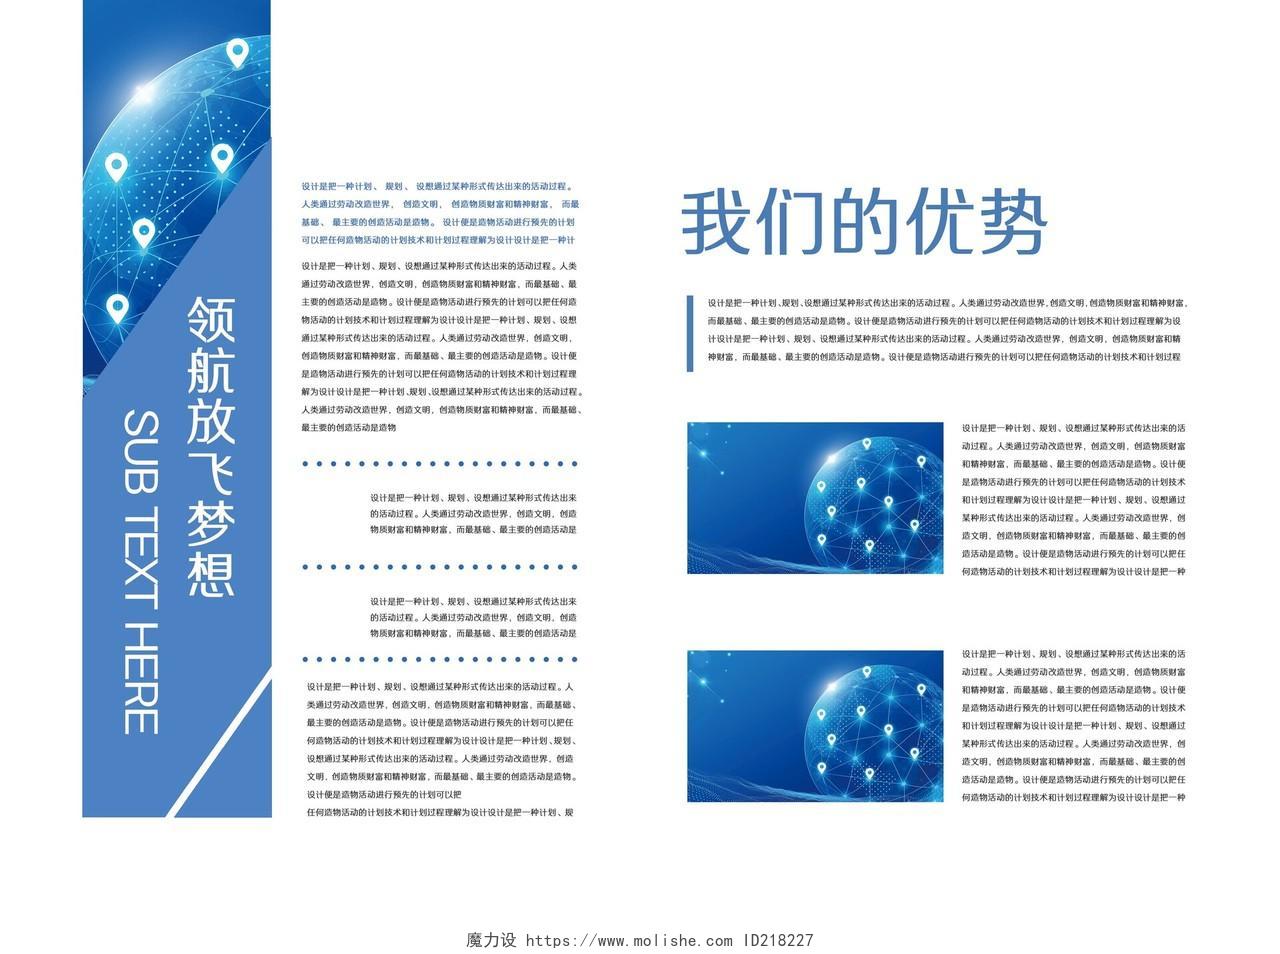 蓝色简约科技商务行业宣传册画册